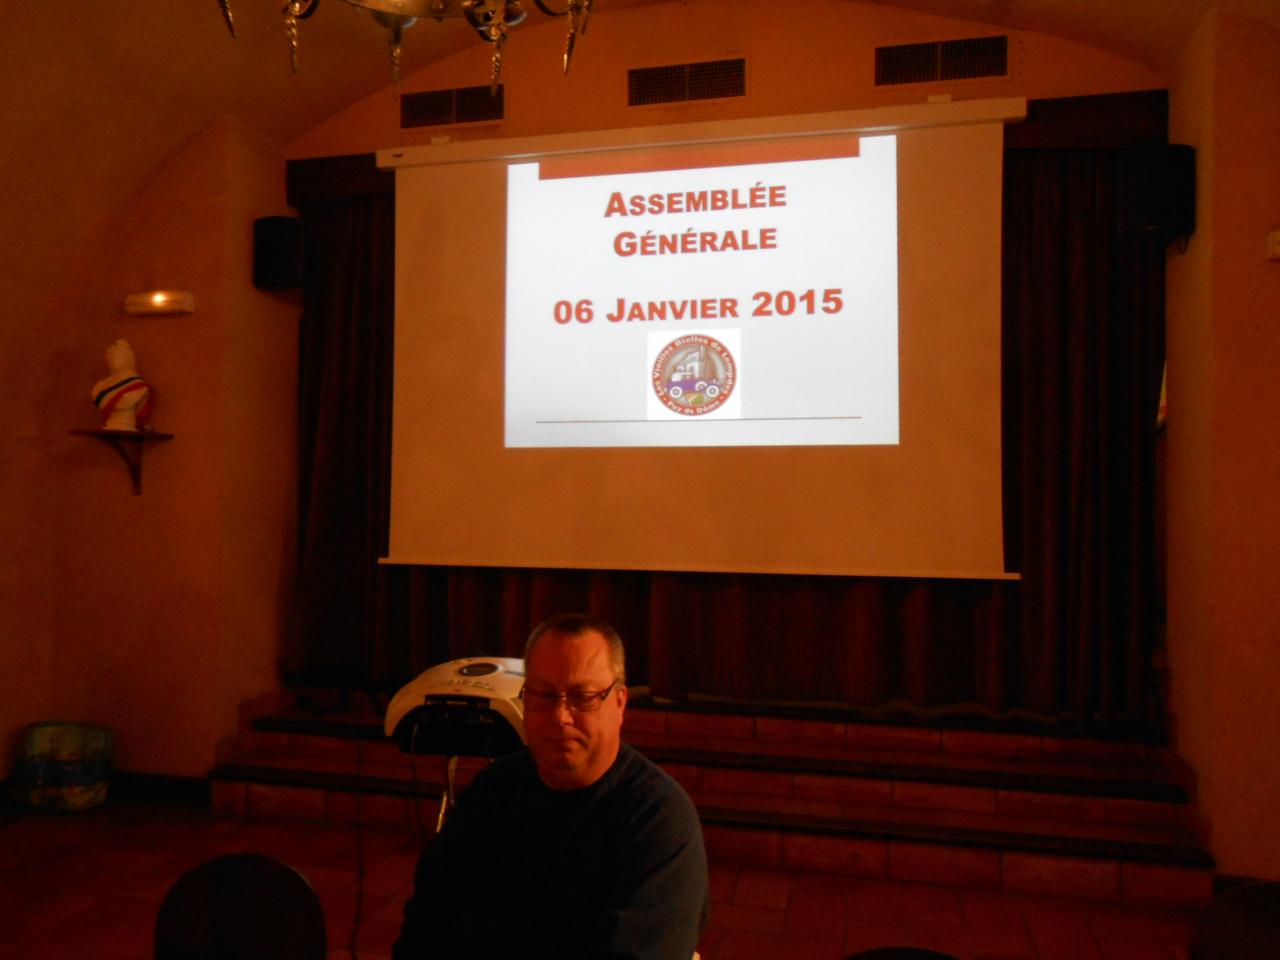 Assemblée Générale du 06 Janvier 2015